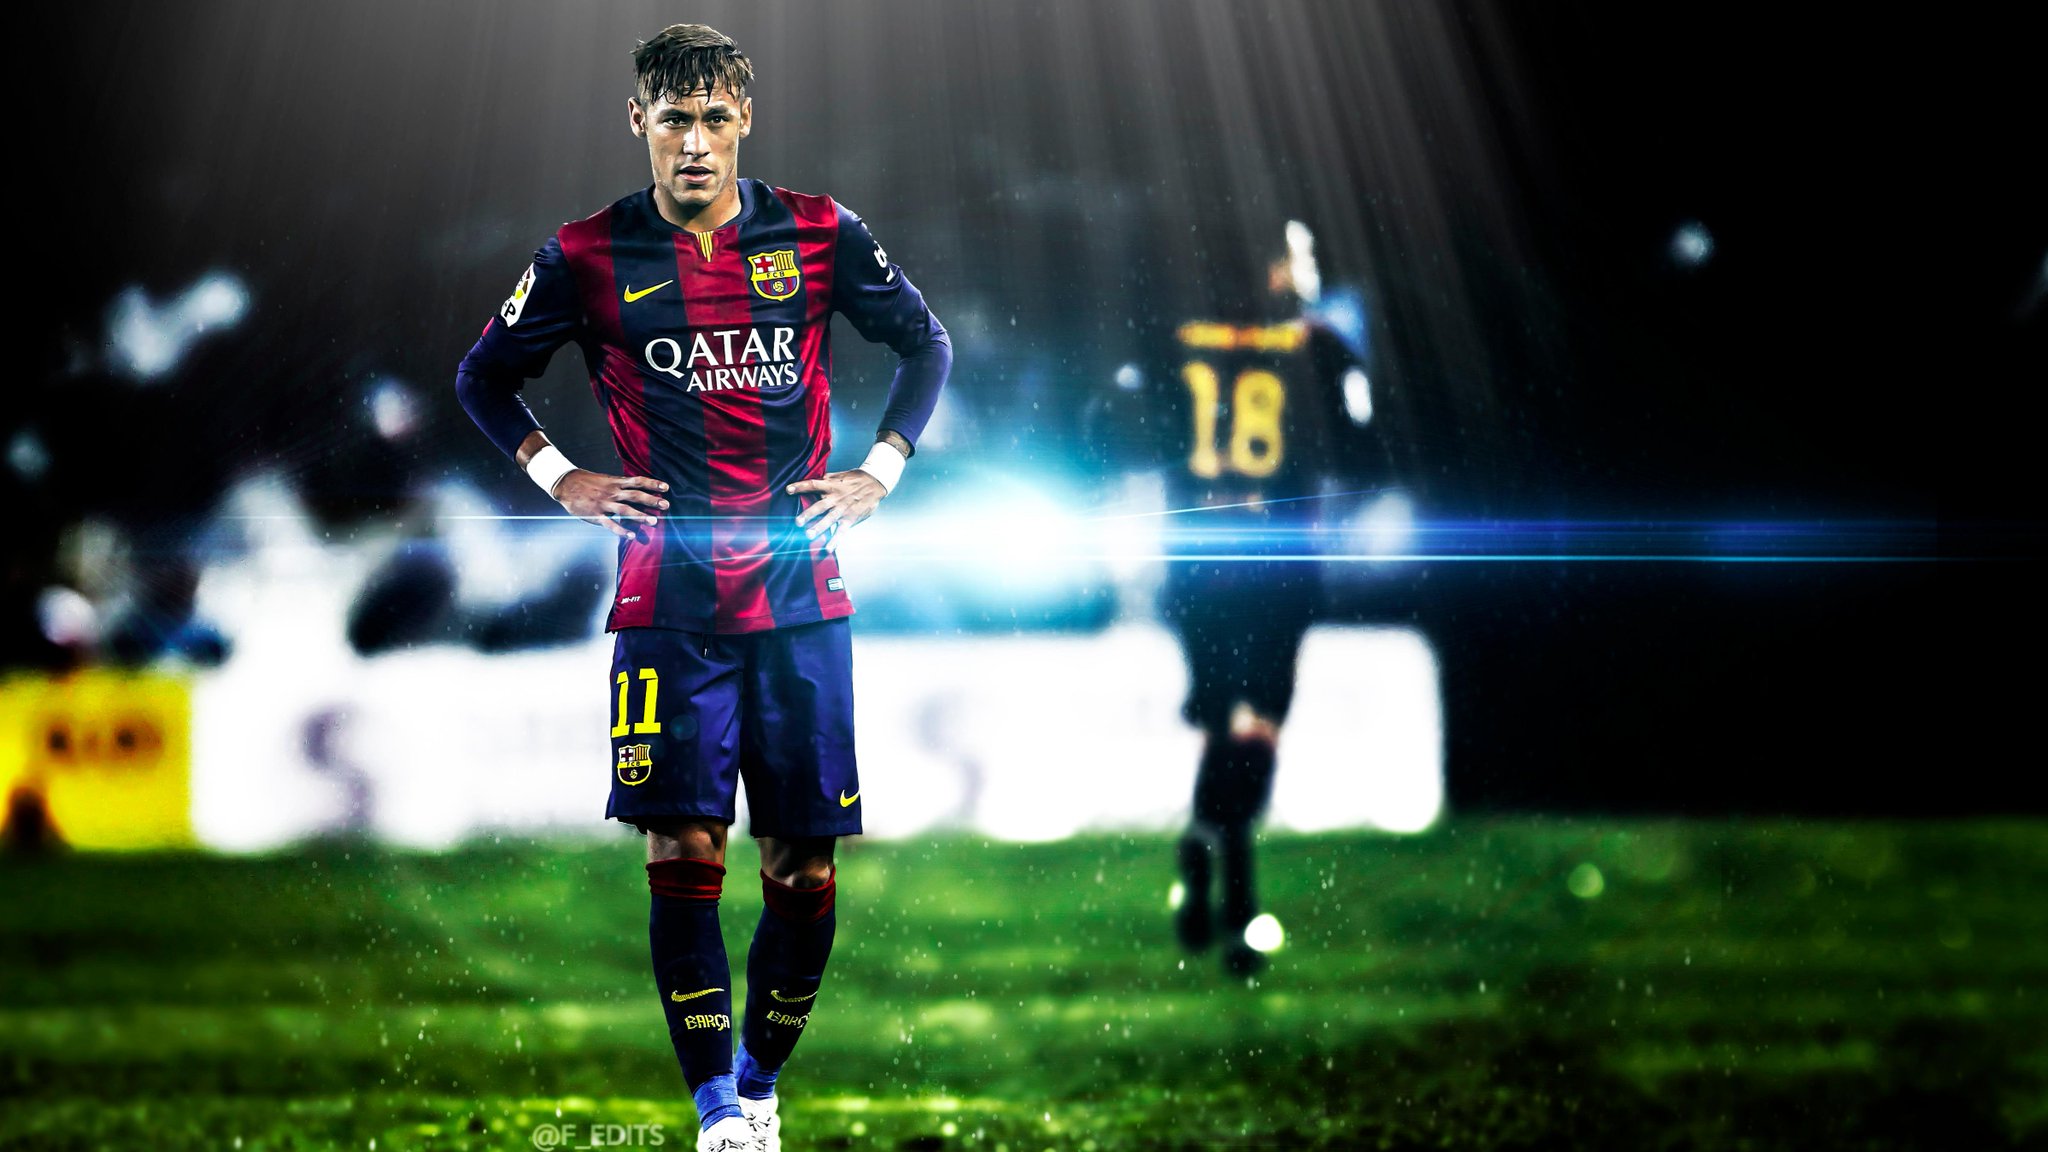 Tải ngay hình nền Neymar Jr. đẹp lung linh cho thiết bị của bạn và cùng khám phá vẻ đẹp của siêu sao bóng đá này trong phong cách riêng của mình!